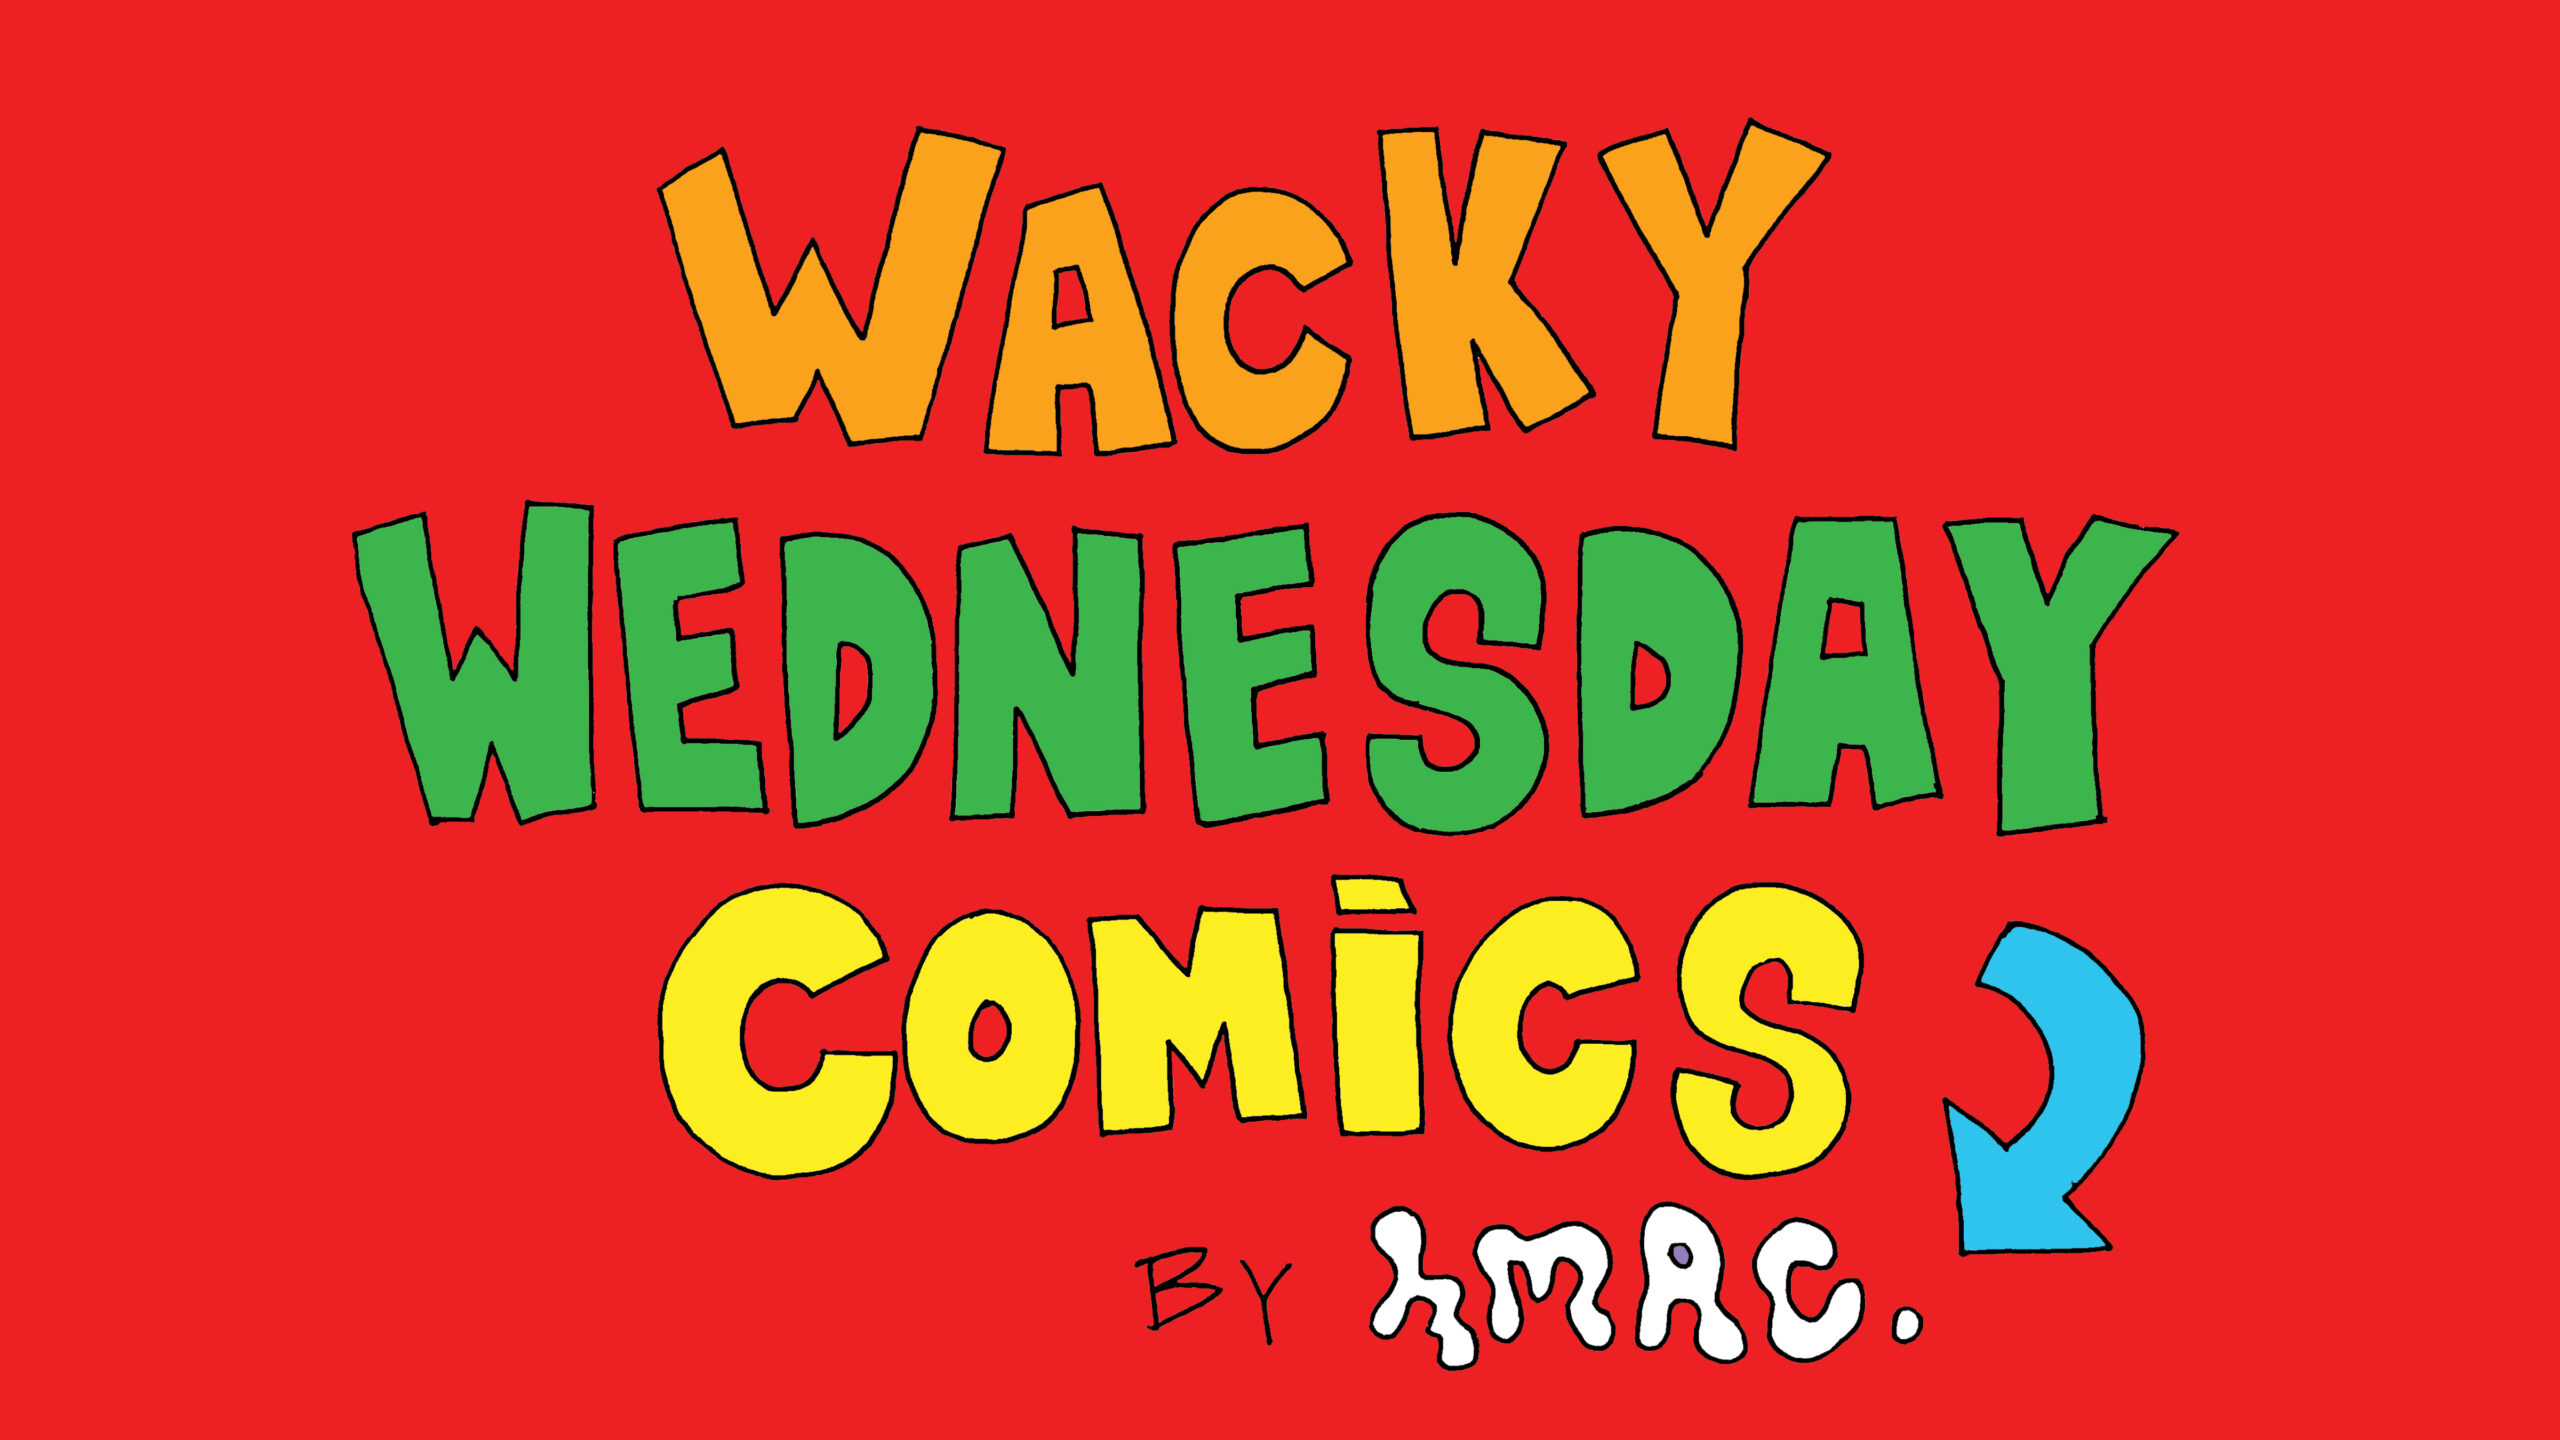 Wacky Wednesday Comics by HMAC